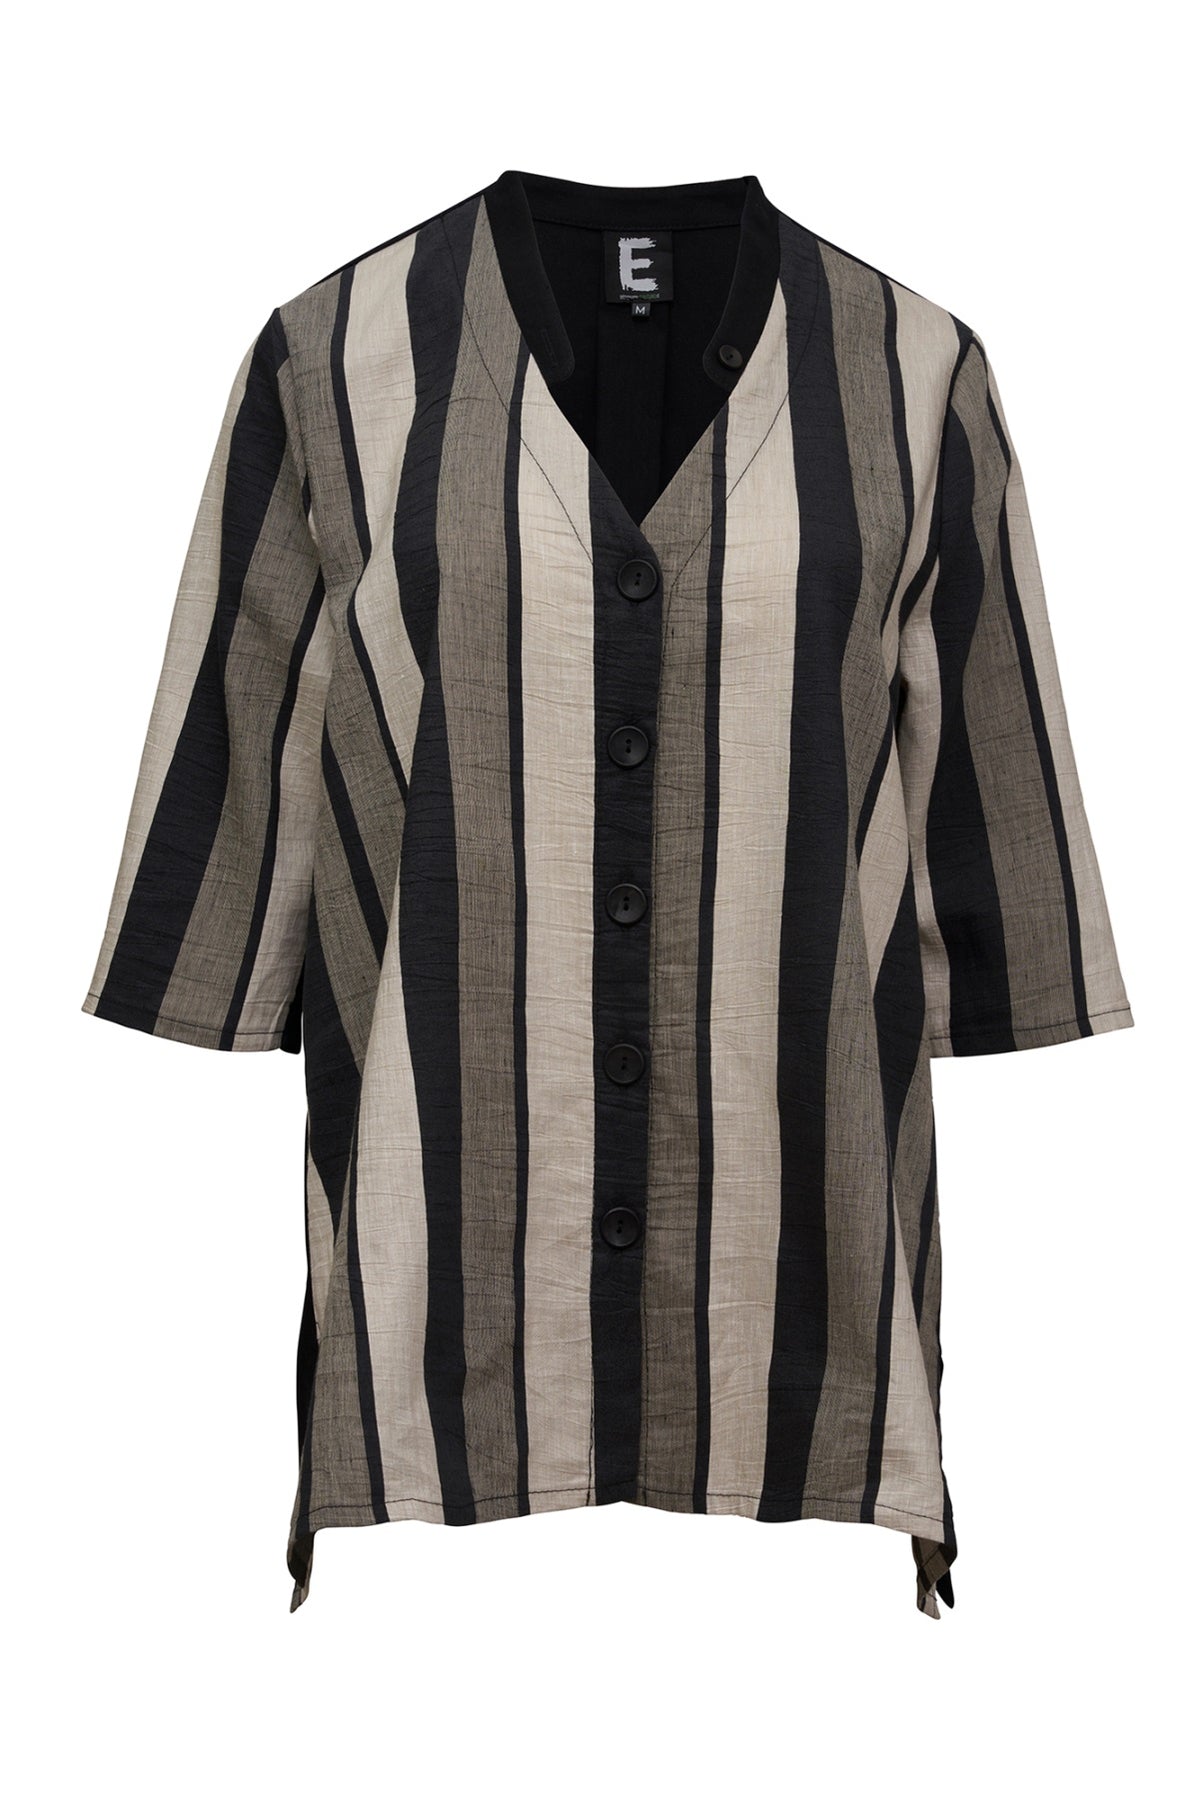 E Avantgarde skjorte/jakke 14120-4, Linen